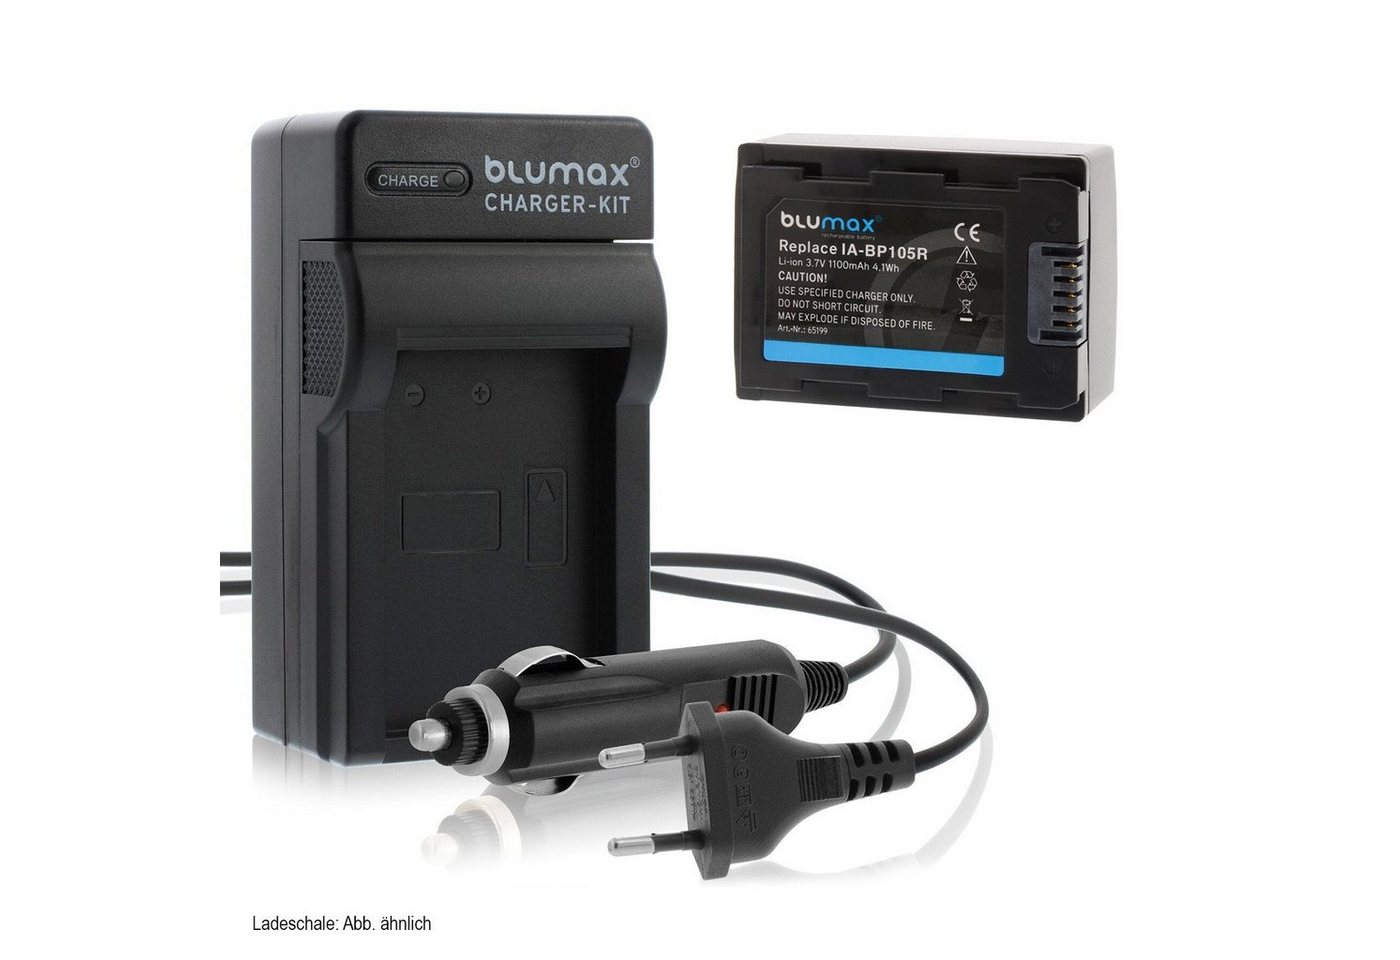 Blumax Set mit Lader für Samsung BP-105R SMX-F50 1100 mAh Kamera-Ladegerät von Blumax